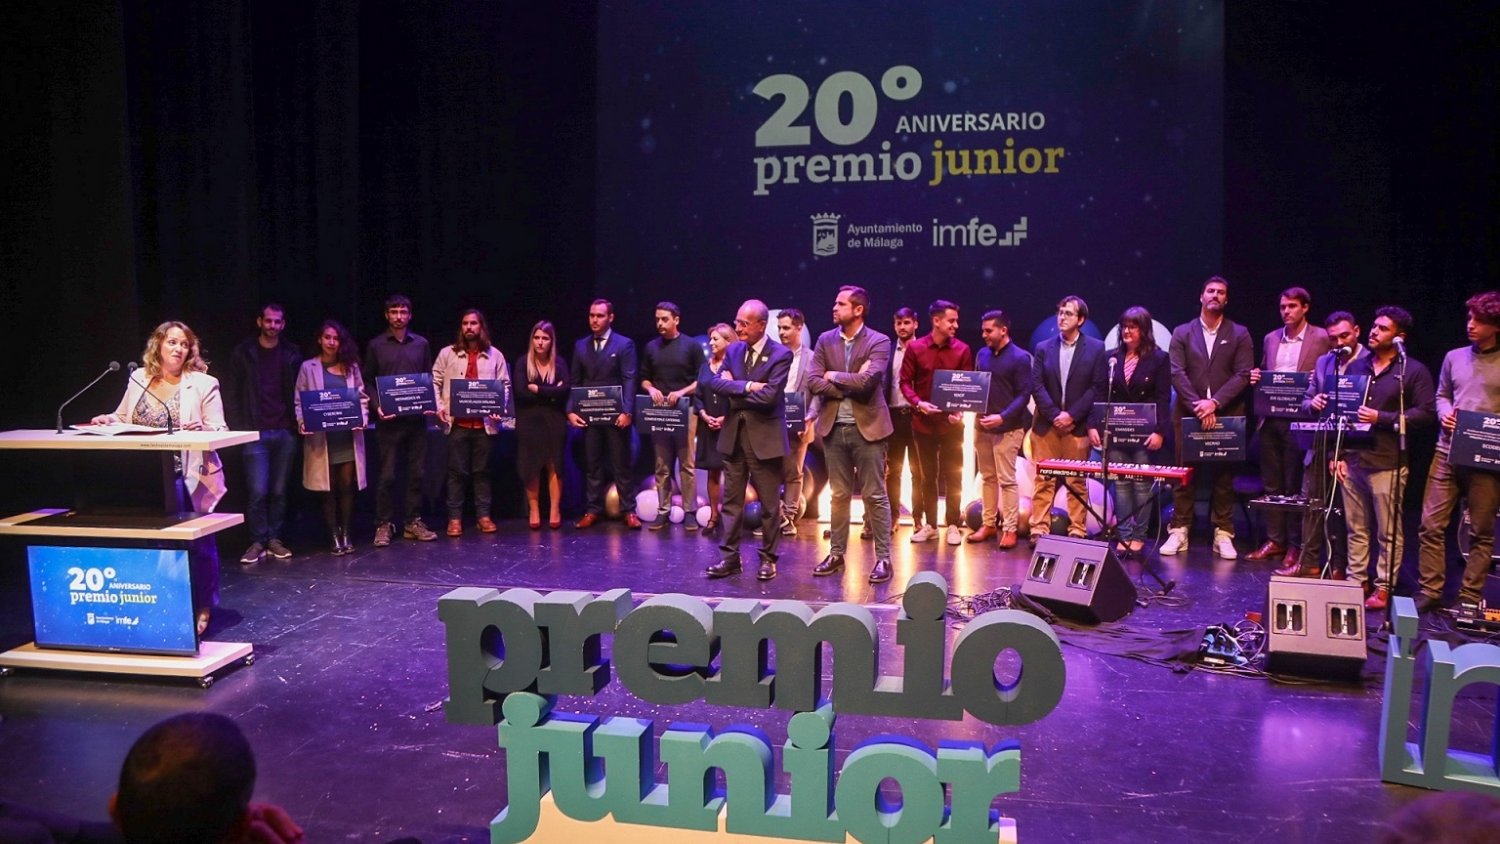 La empresa Metamedicsvr SL, ganadora del XX Premio Junior con 7.000 euros